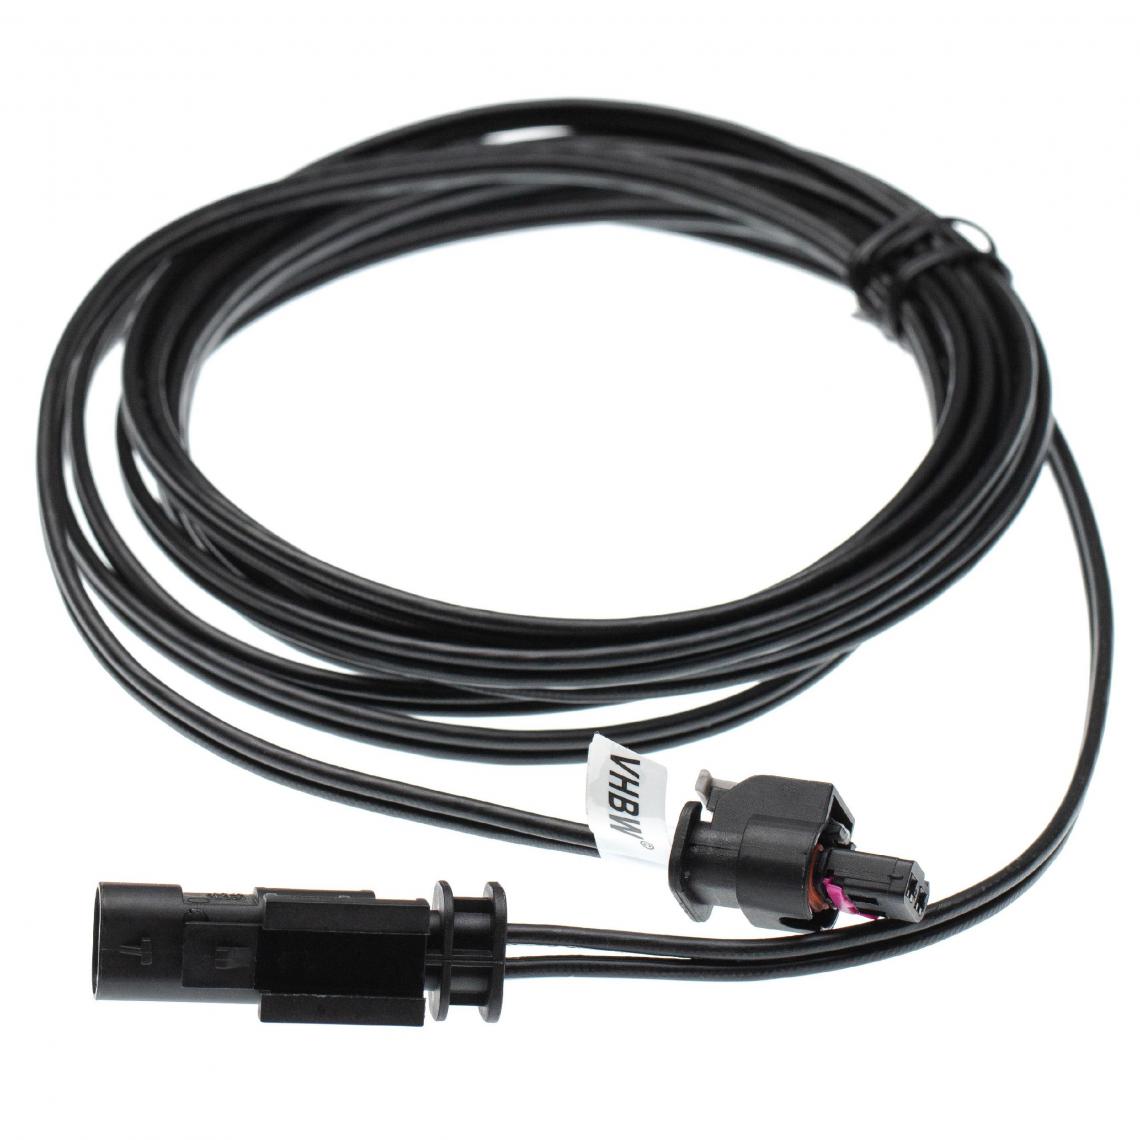 Vhbw - vhbw Câble basse tension pour robots tondeuses compatible avec Flymo 1200R (Année 2013 - 2015) - Câble robot tondeuse > transformateur, 3 m - Accessoires tondeuses